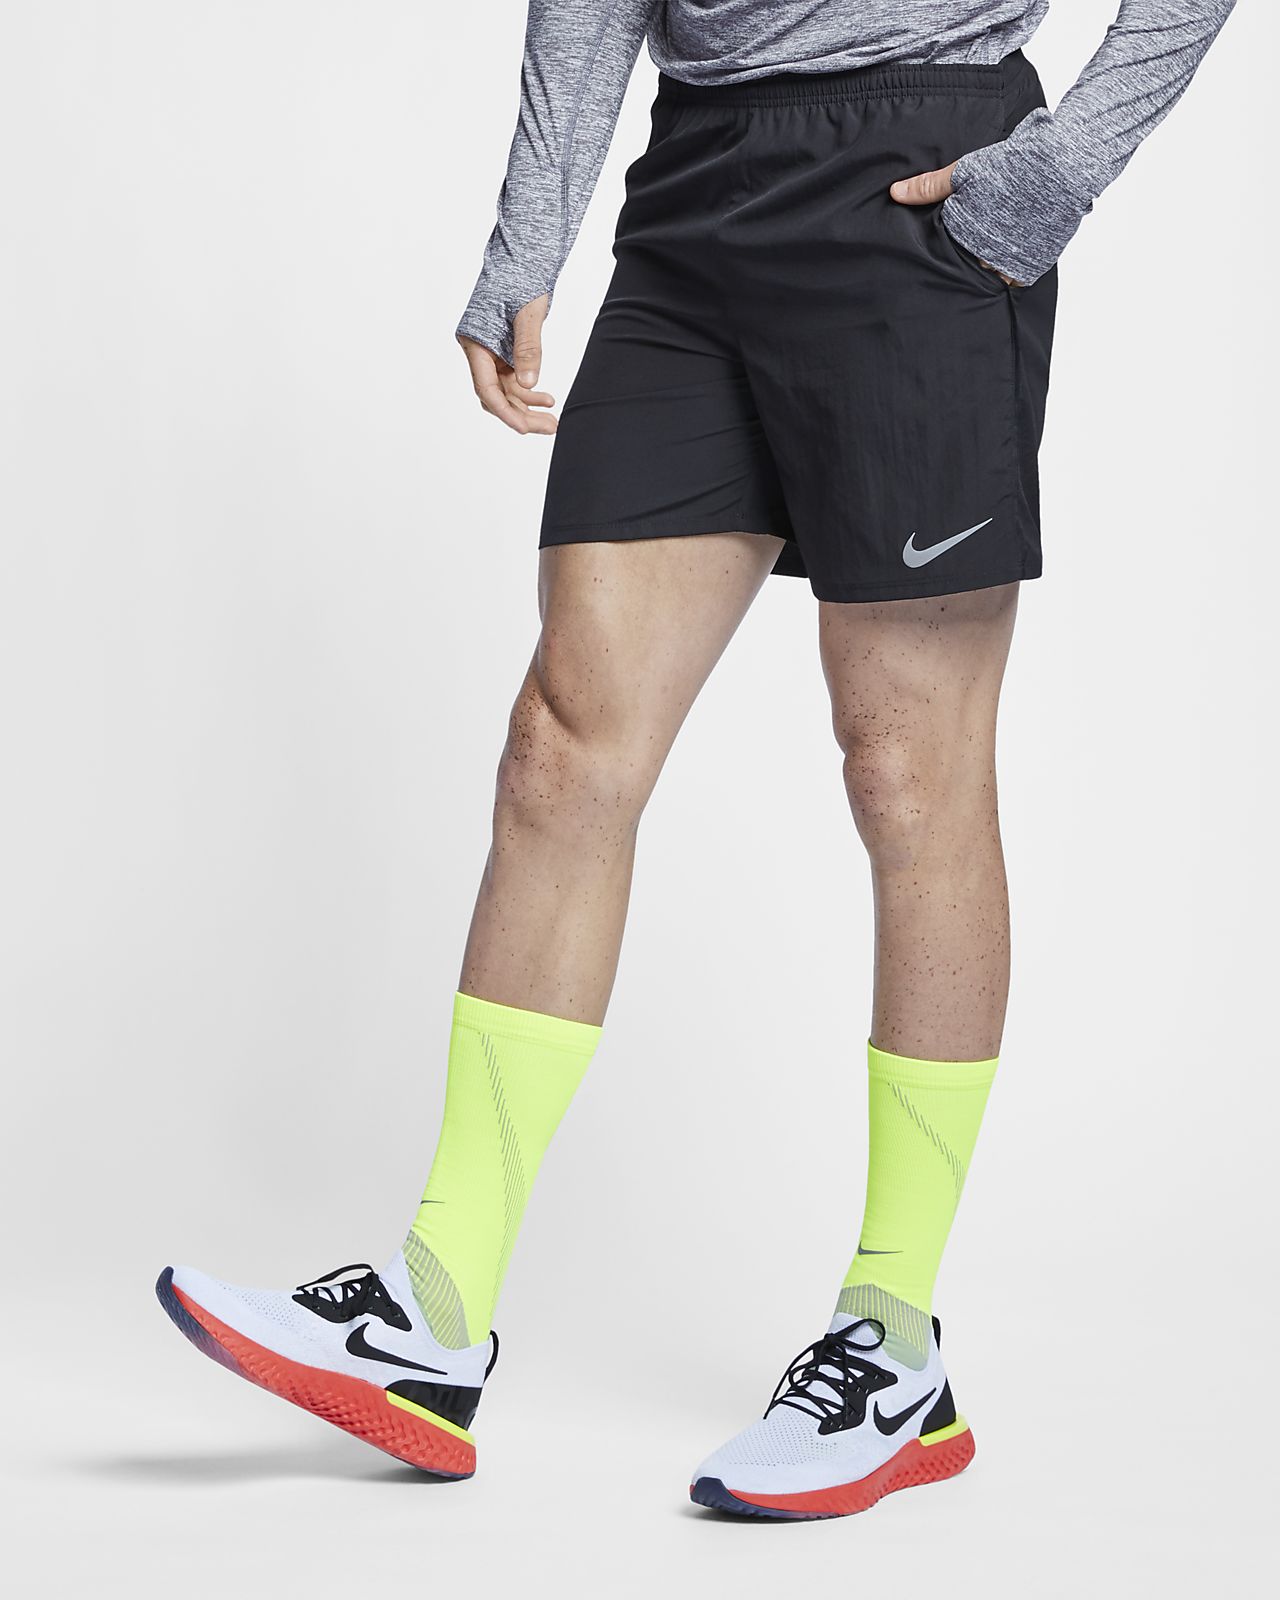 Nike Men's Running Shorts. Nike LU